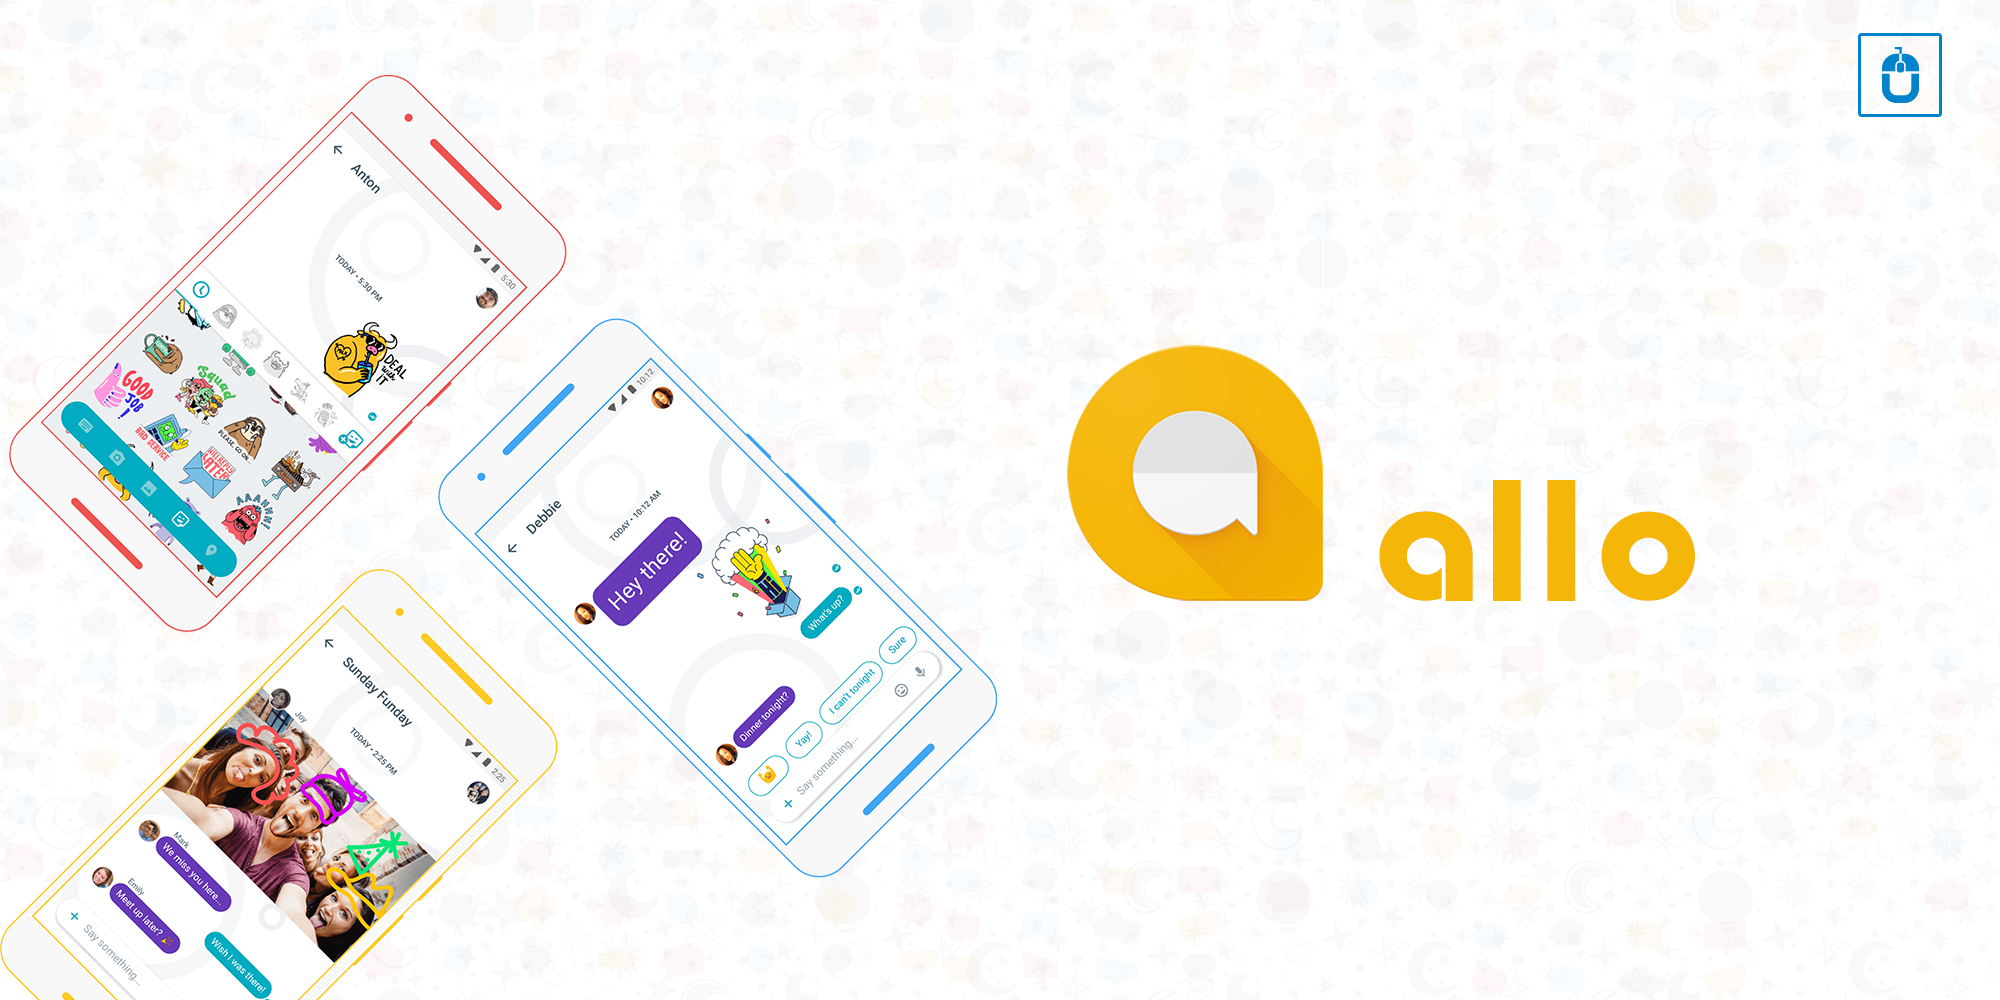 Google “Allo”- The Most Interactive App